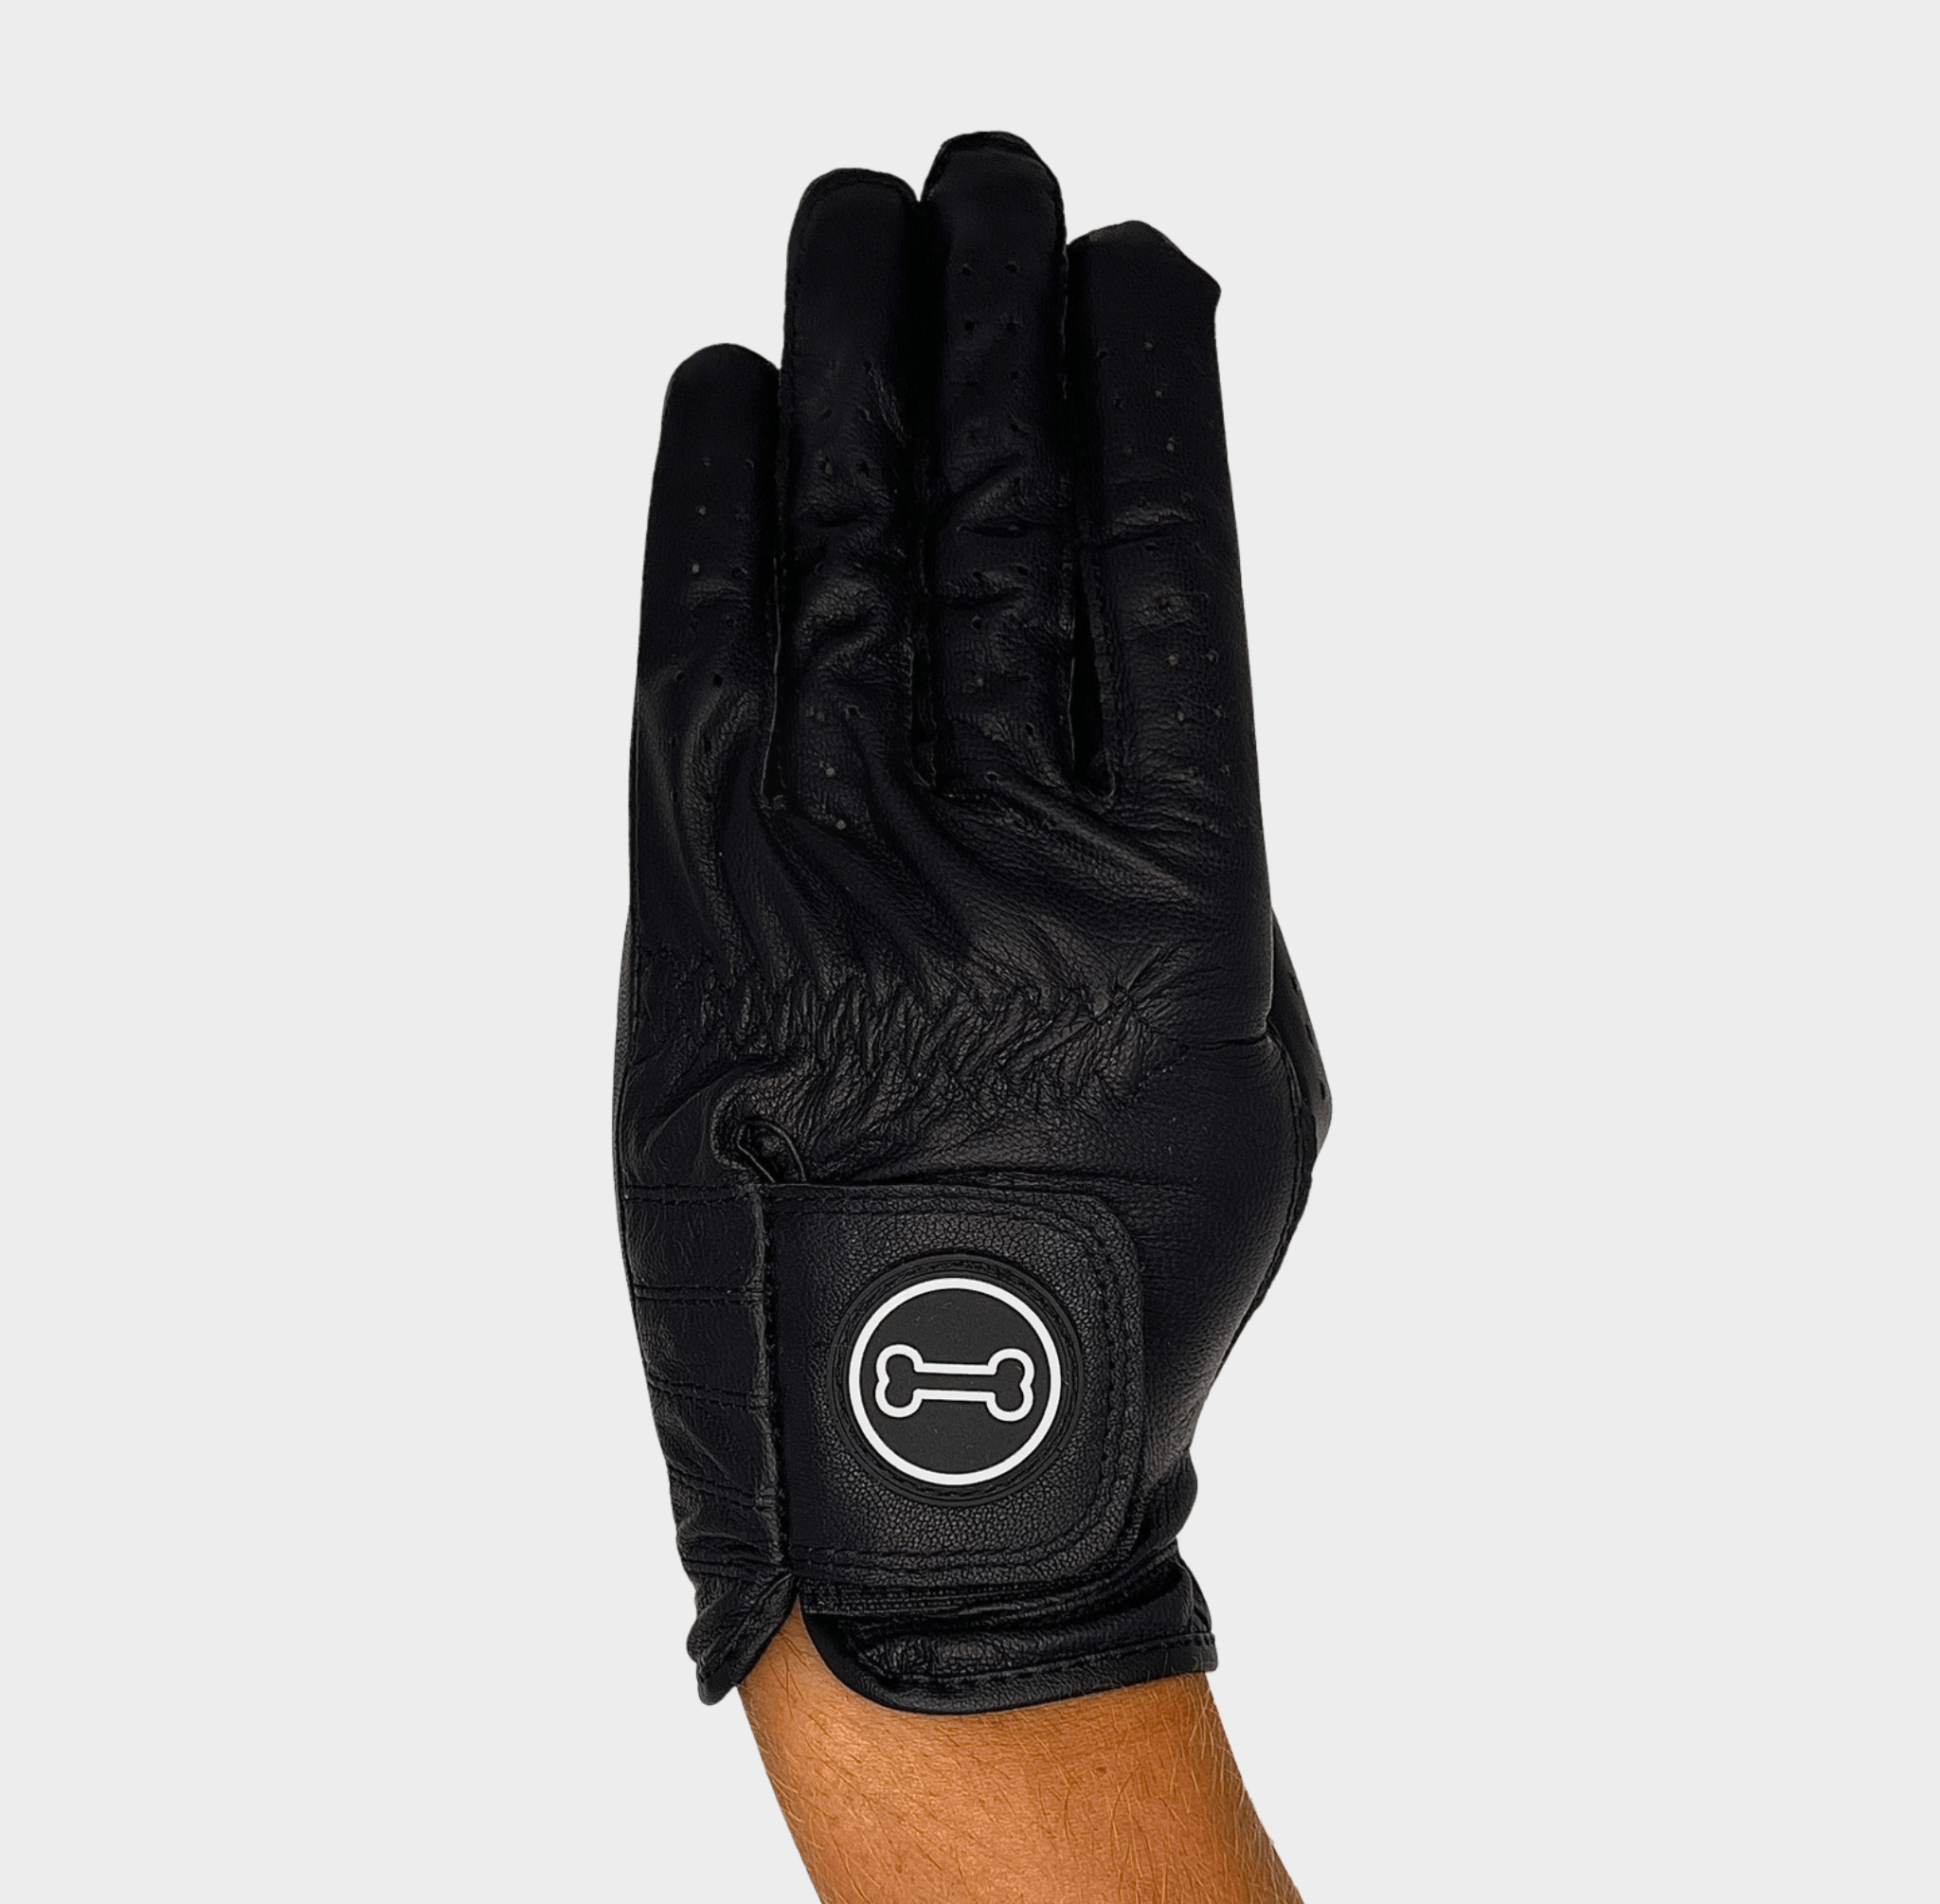 Dogleg left - Men's Black Glove